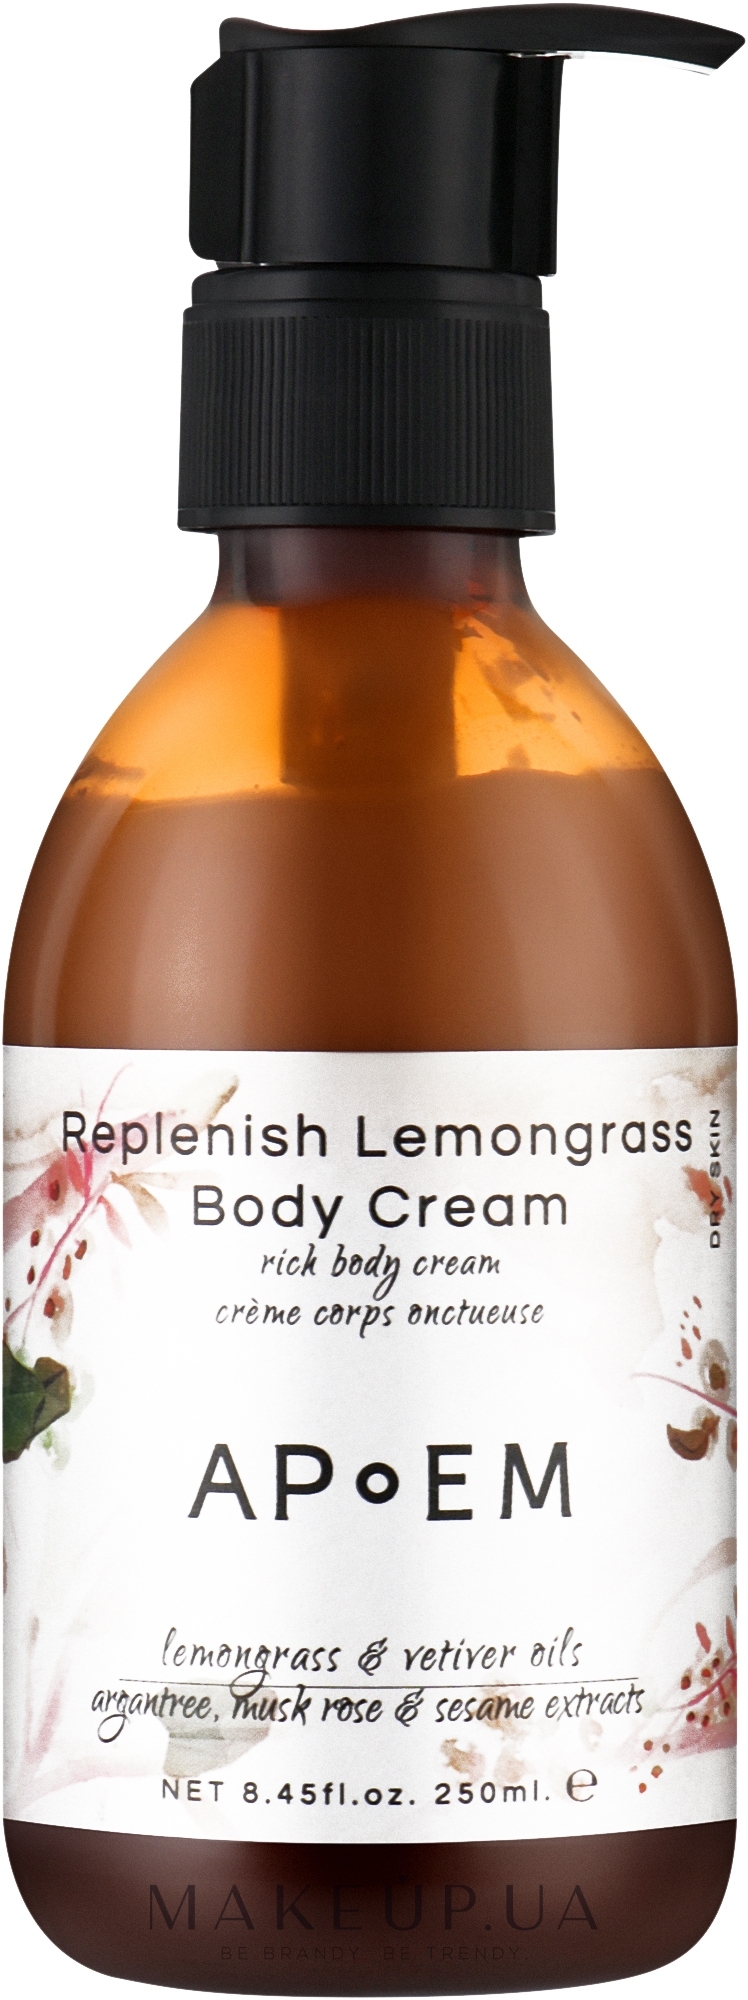 Восстанавливающий крем для лица и тела с лемонграссом - APoEM Replenish Lemongrass Body Cream — фото 250ml